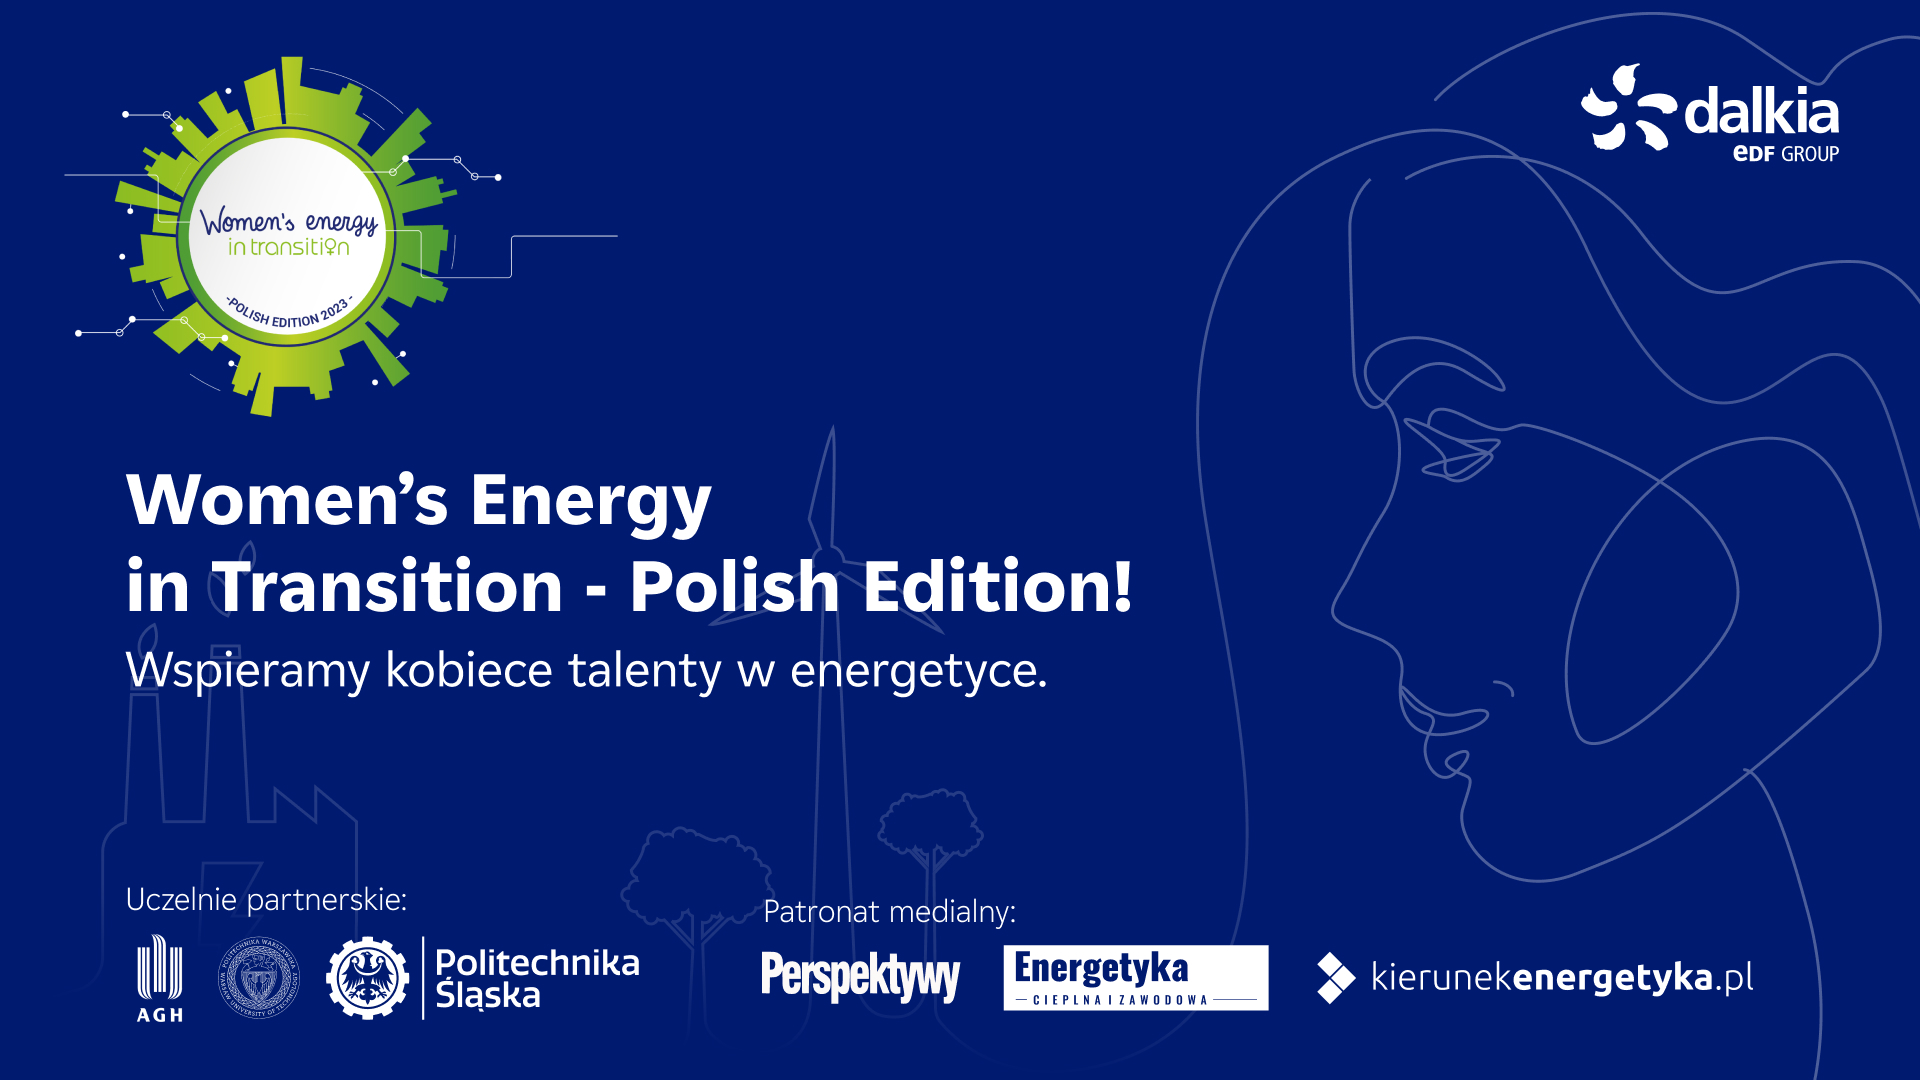 Energetyka jest kobietą – wystartowała II edycja Women’s Energy in Transition – Polish Edition